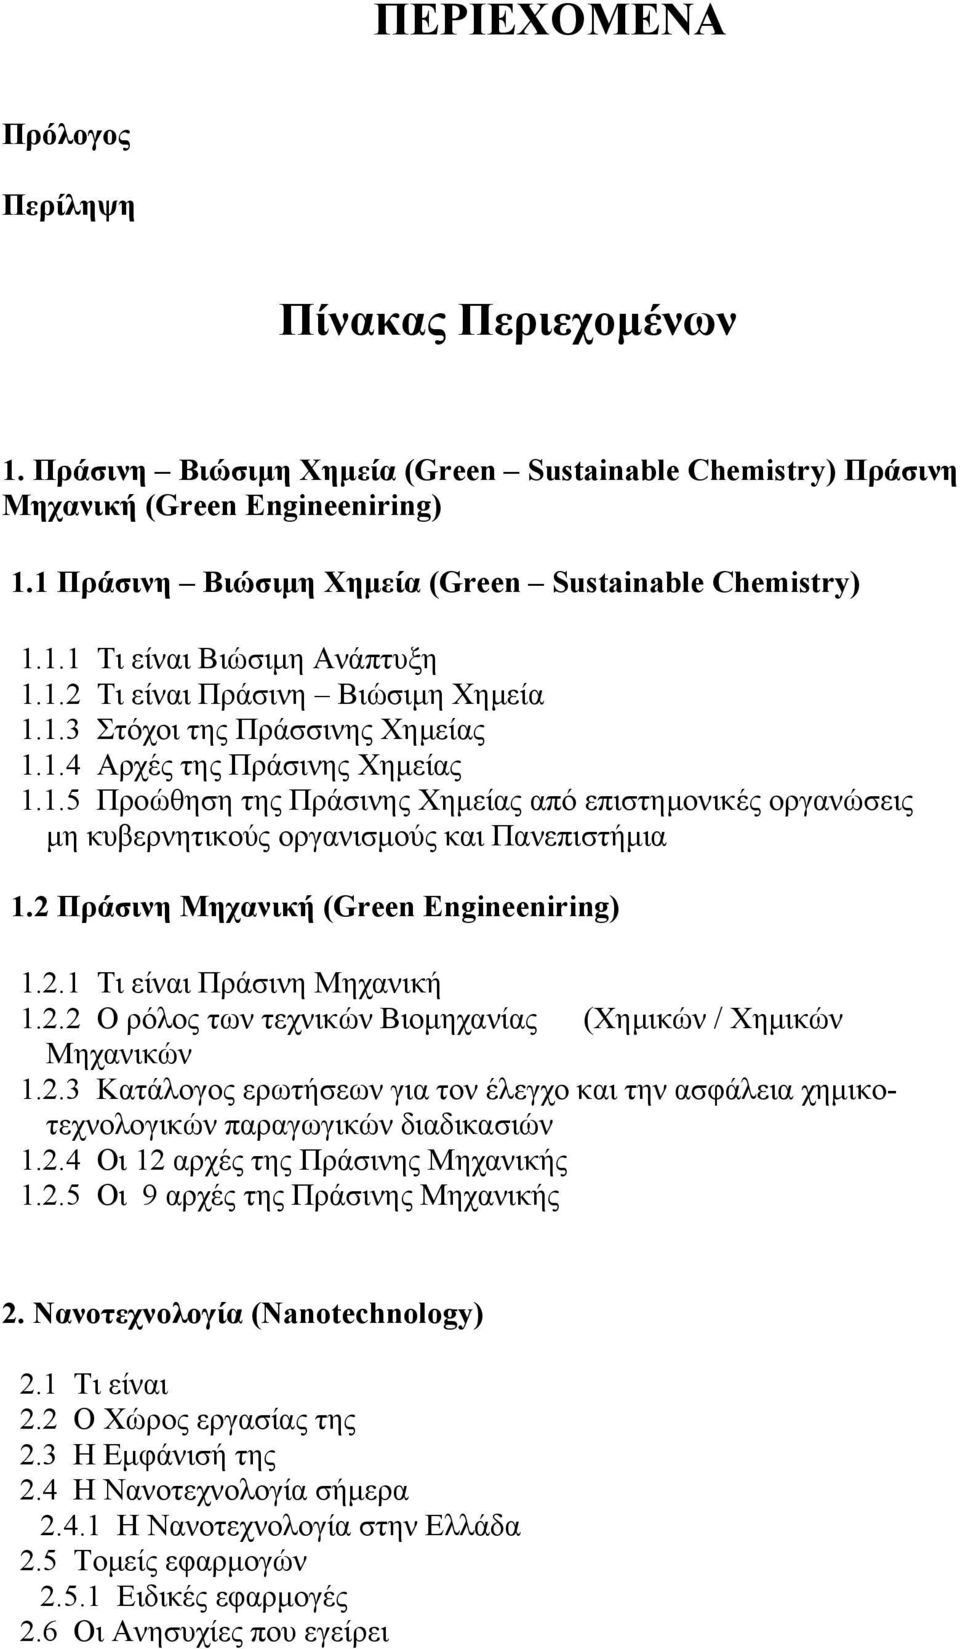 2 Πράσινη Μηχανική (Green Engineeniring) 1.2.1 Τι είναι Πράσινη Μηχανική 1.2.2 Ο ρόλος των τεχνικών Βιομηχανίας (Χημικών / Χημικών Μηχανικών 1.2.3 Κατάλογος ερωτήσεων για τον έλεγχο και την ασφάλεια χημικοτεχνολογικών παραγωγικών διαδικασιών 1.